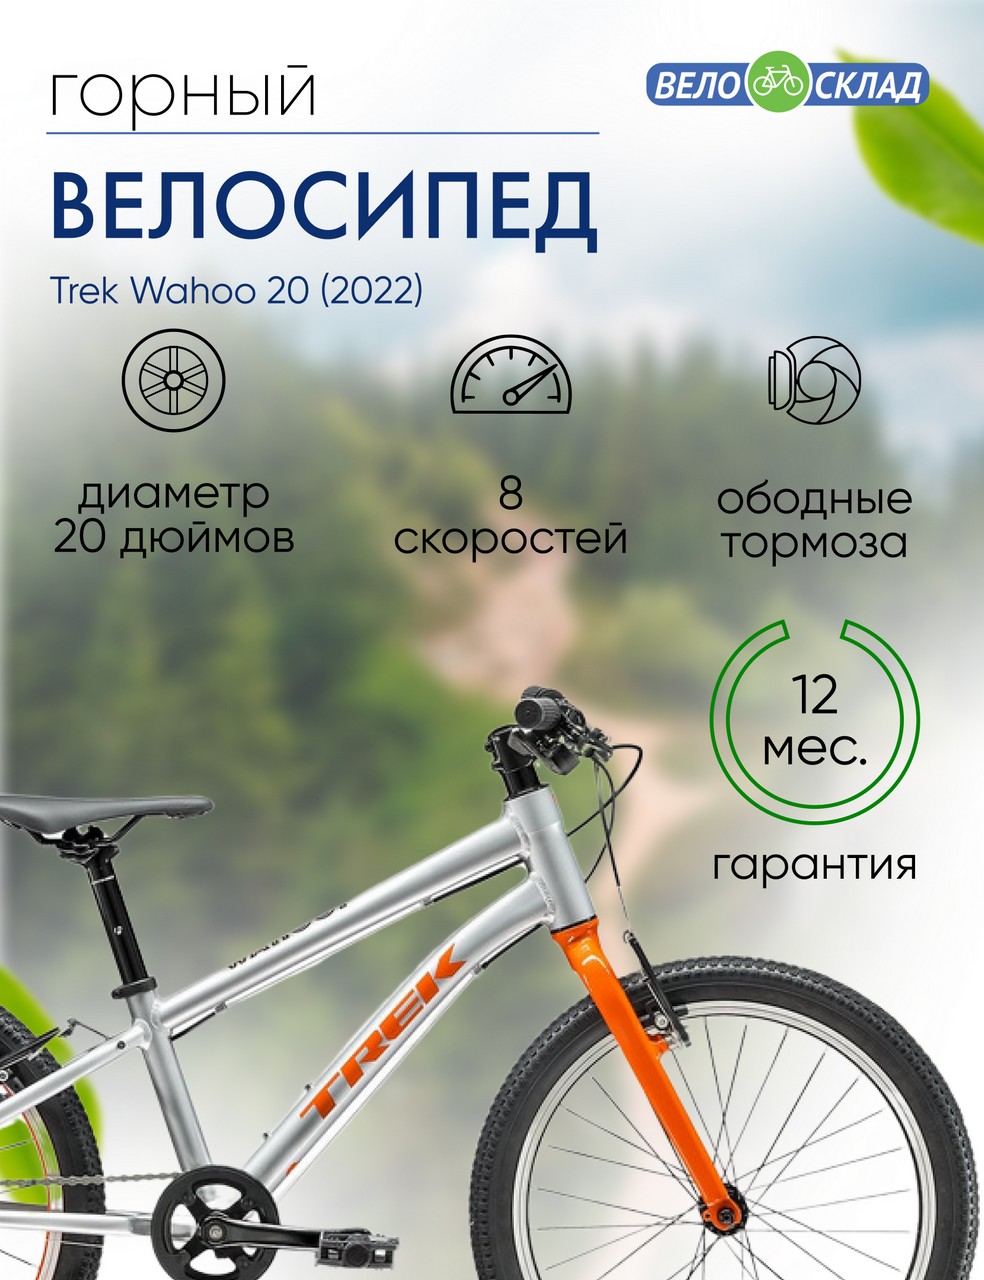 Детский велосипед Trek Wahoo 20, год 2022, цвет Серебристый-Оранжевый